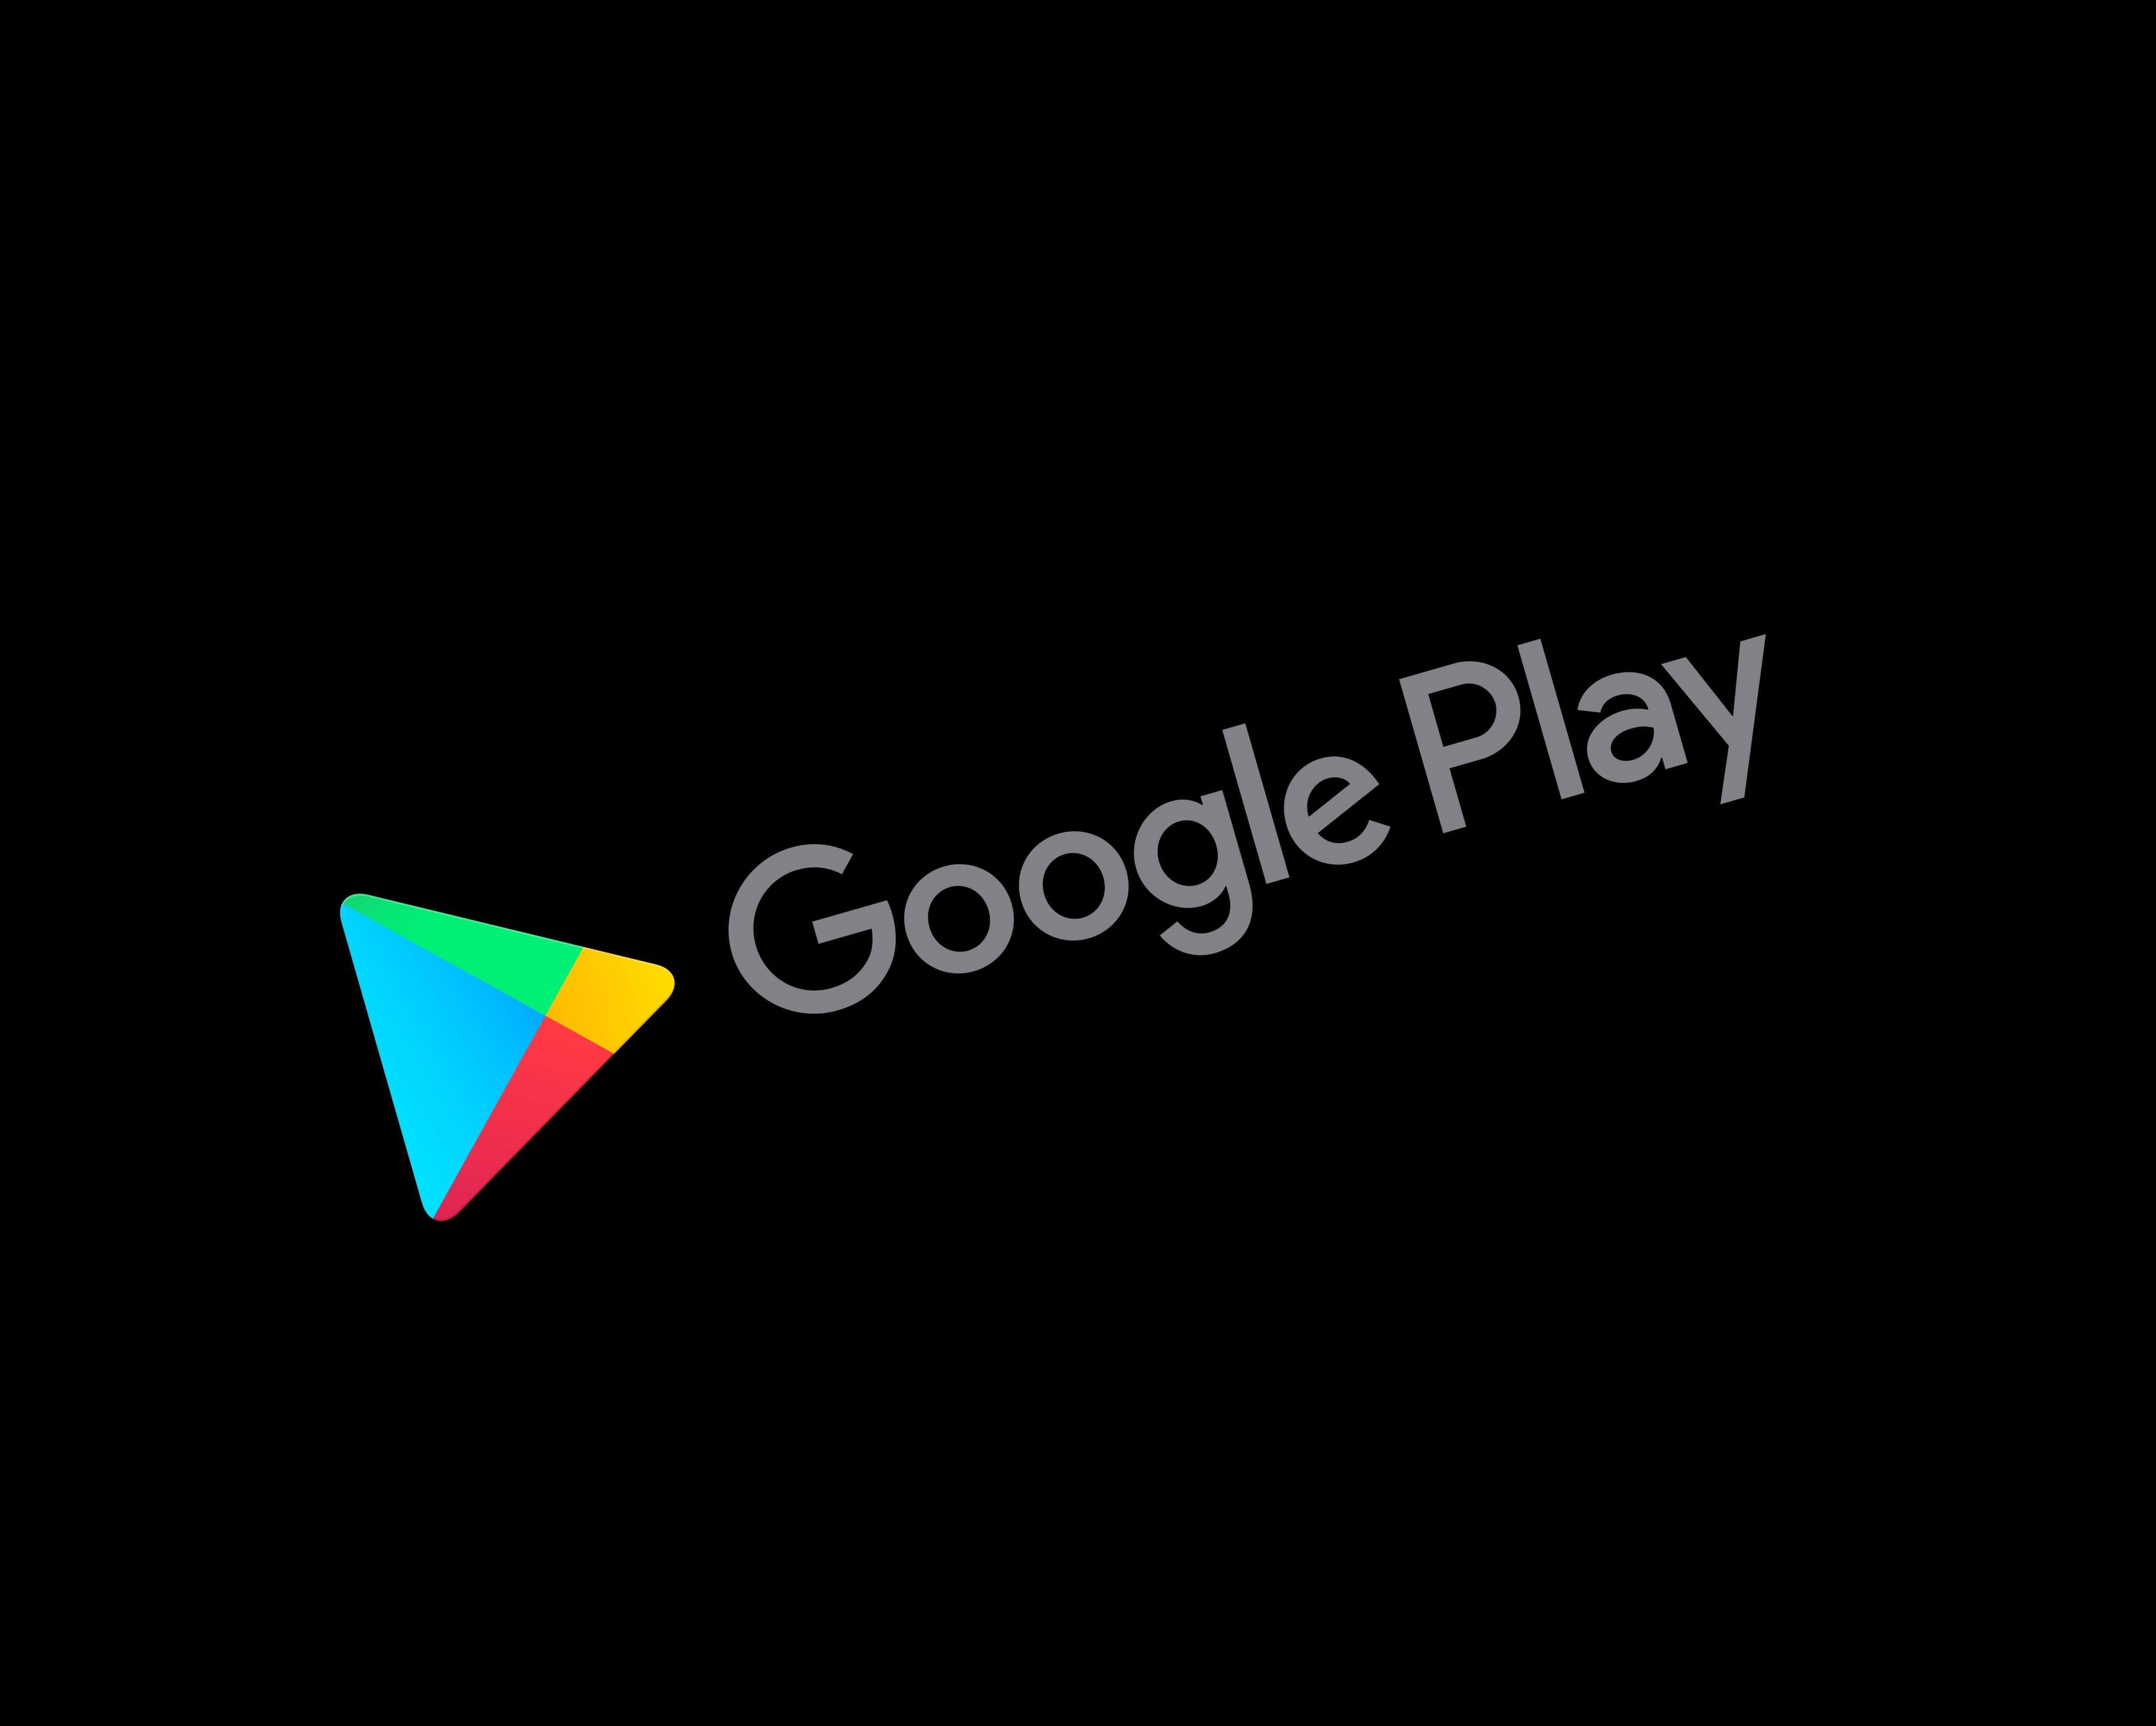 Google-Play-Guthaben übertragen oder verschenken – geht das?